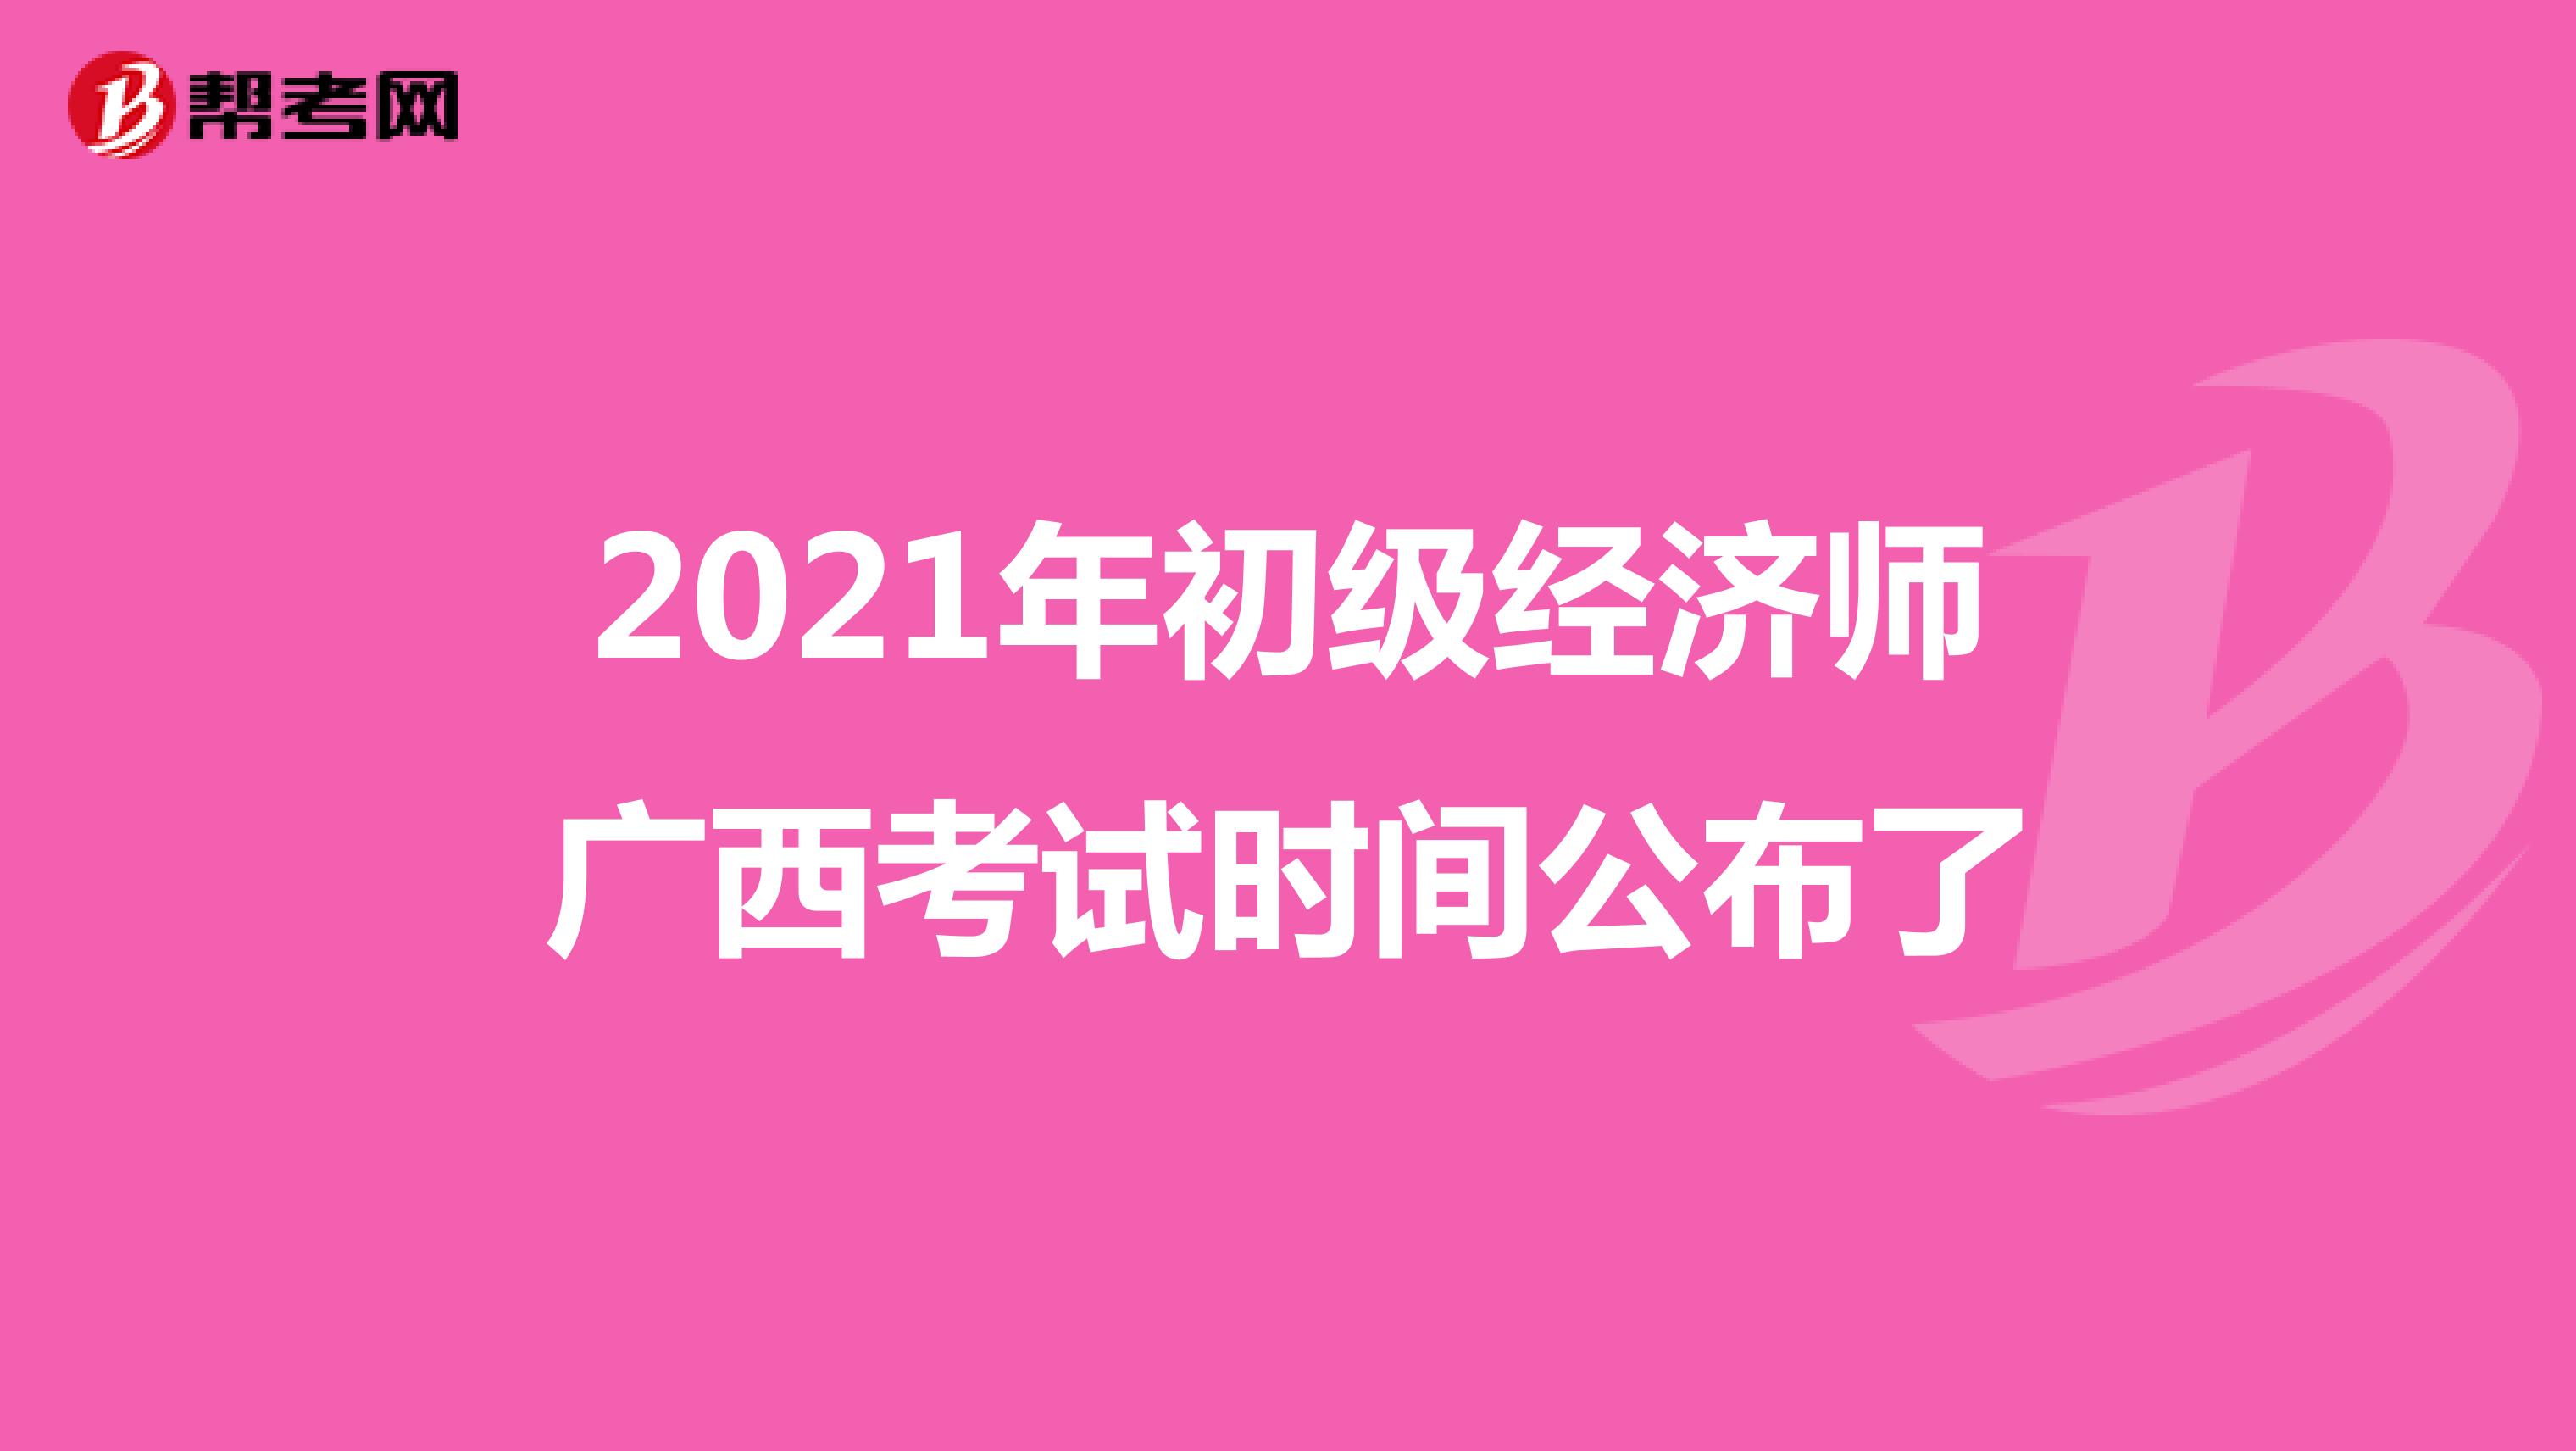 2021年初级经济师广西考试时间公布了